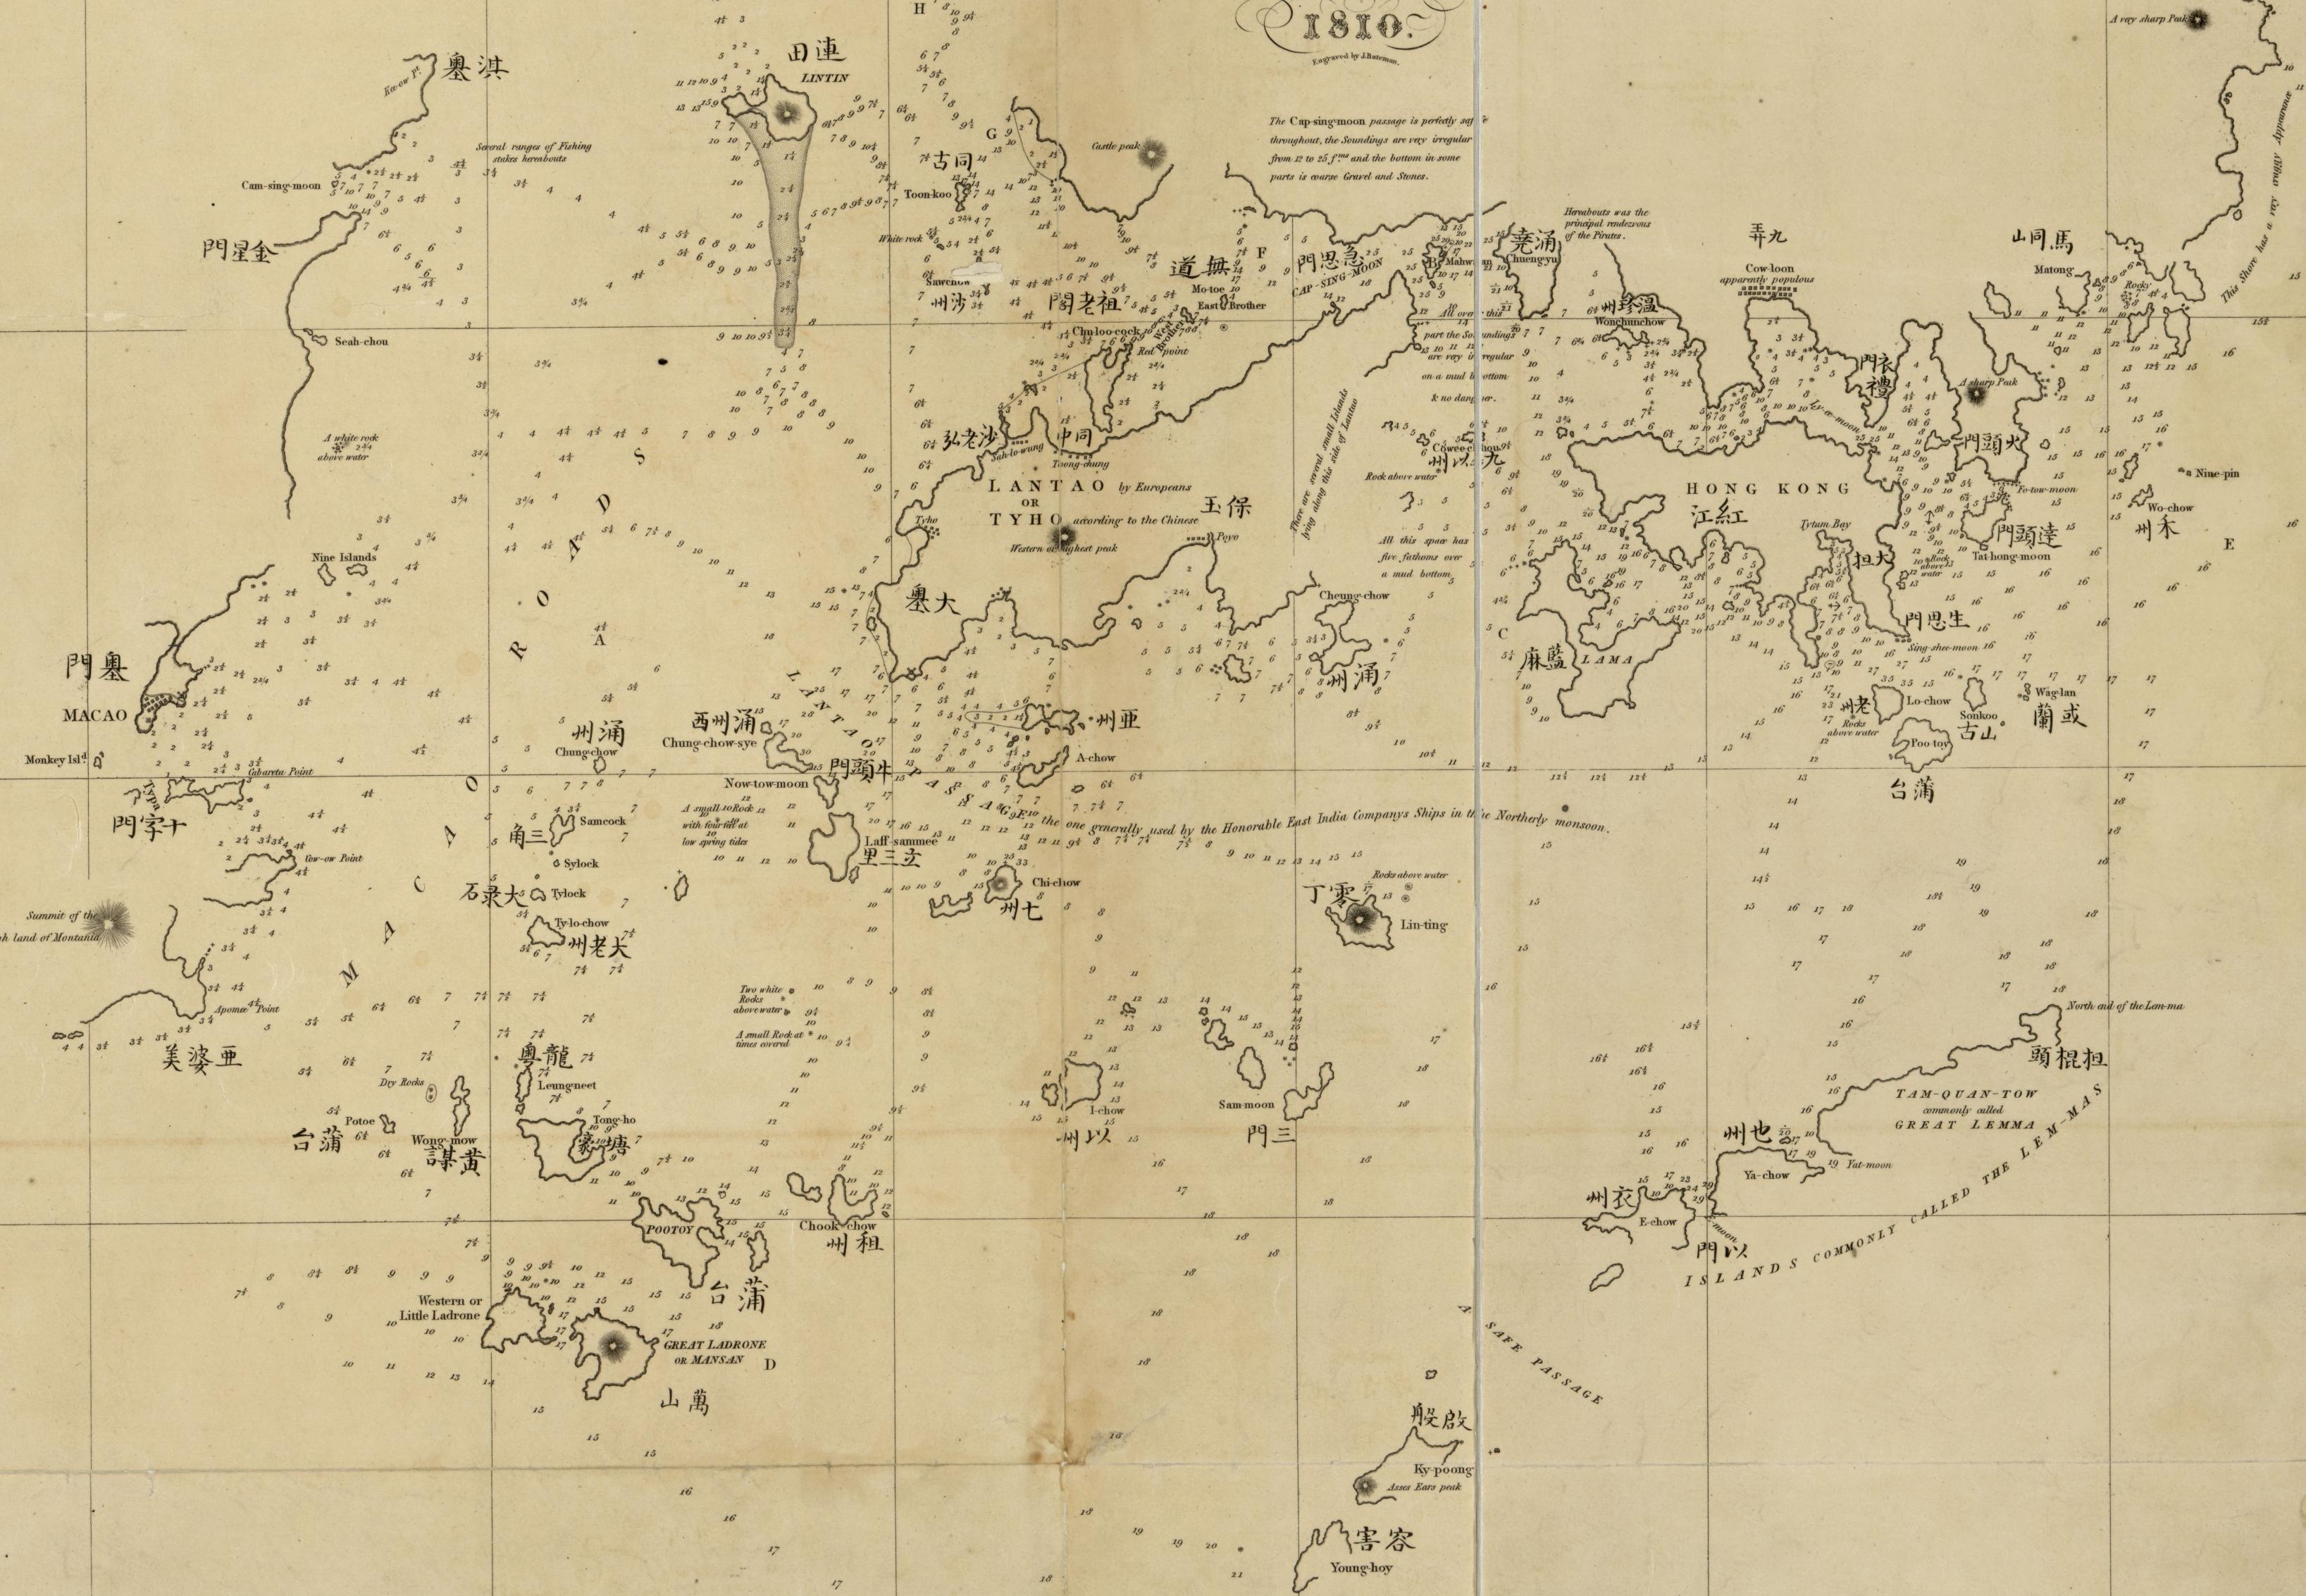 1810年（嘉慶十五年），英國東印度公司委託船長羅斯進行水文調查而編制的《澳門航道圖》將大嶼山標為Lanto與Tyho。